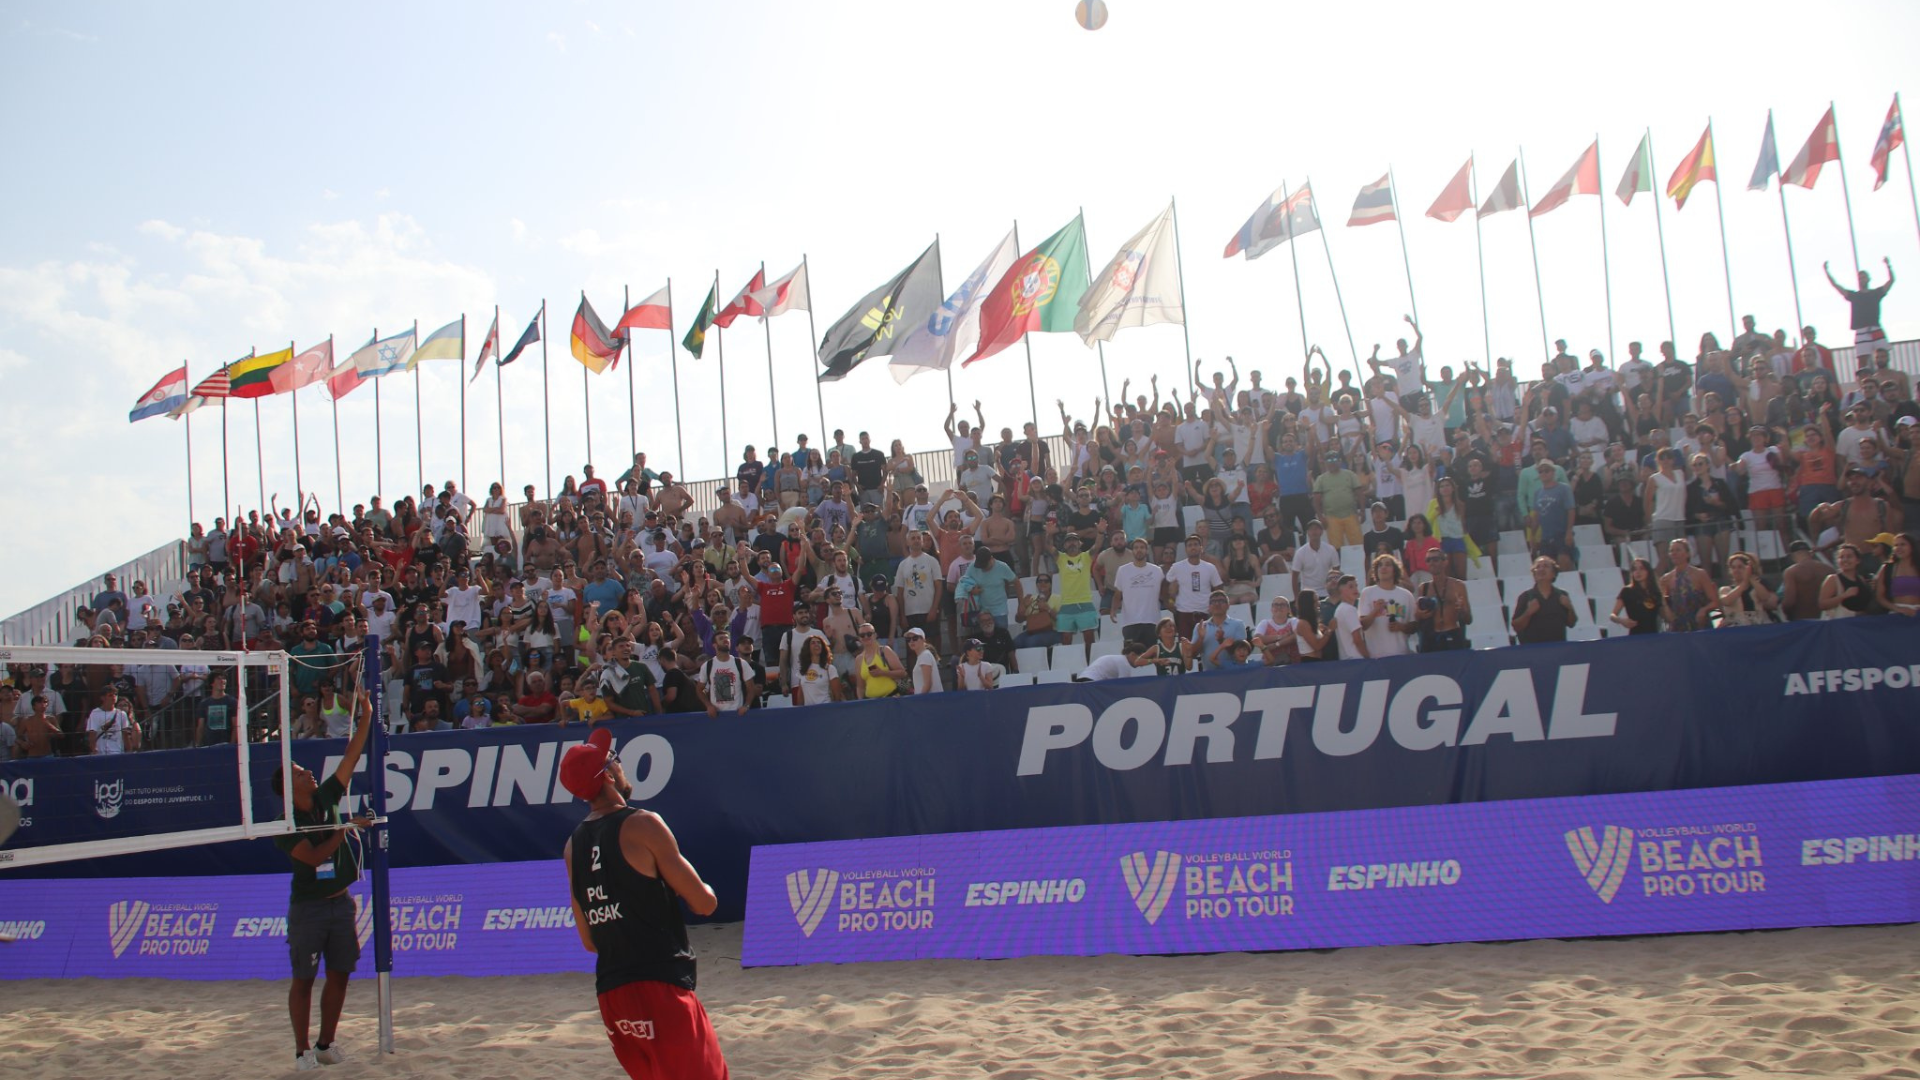 2022 FIVB Beach Volleyball World Tour